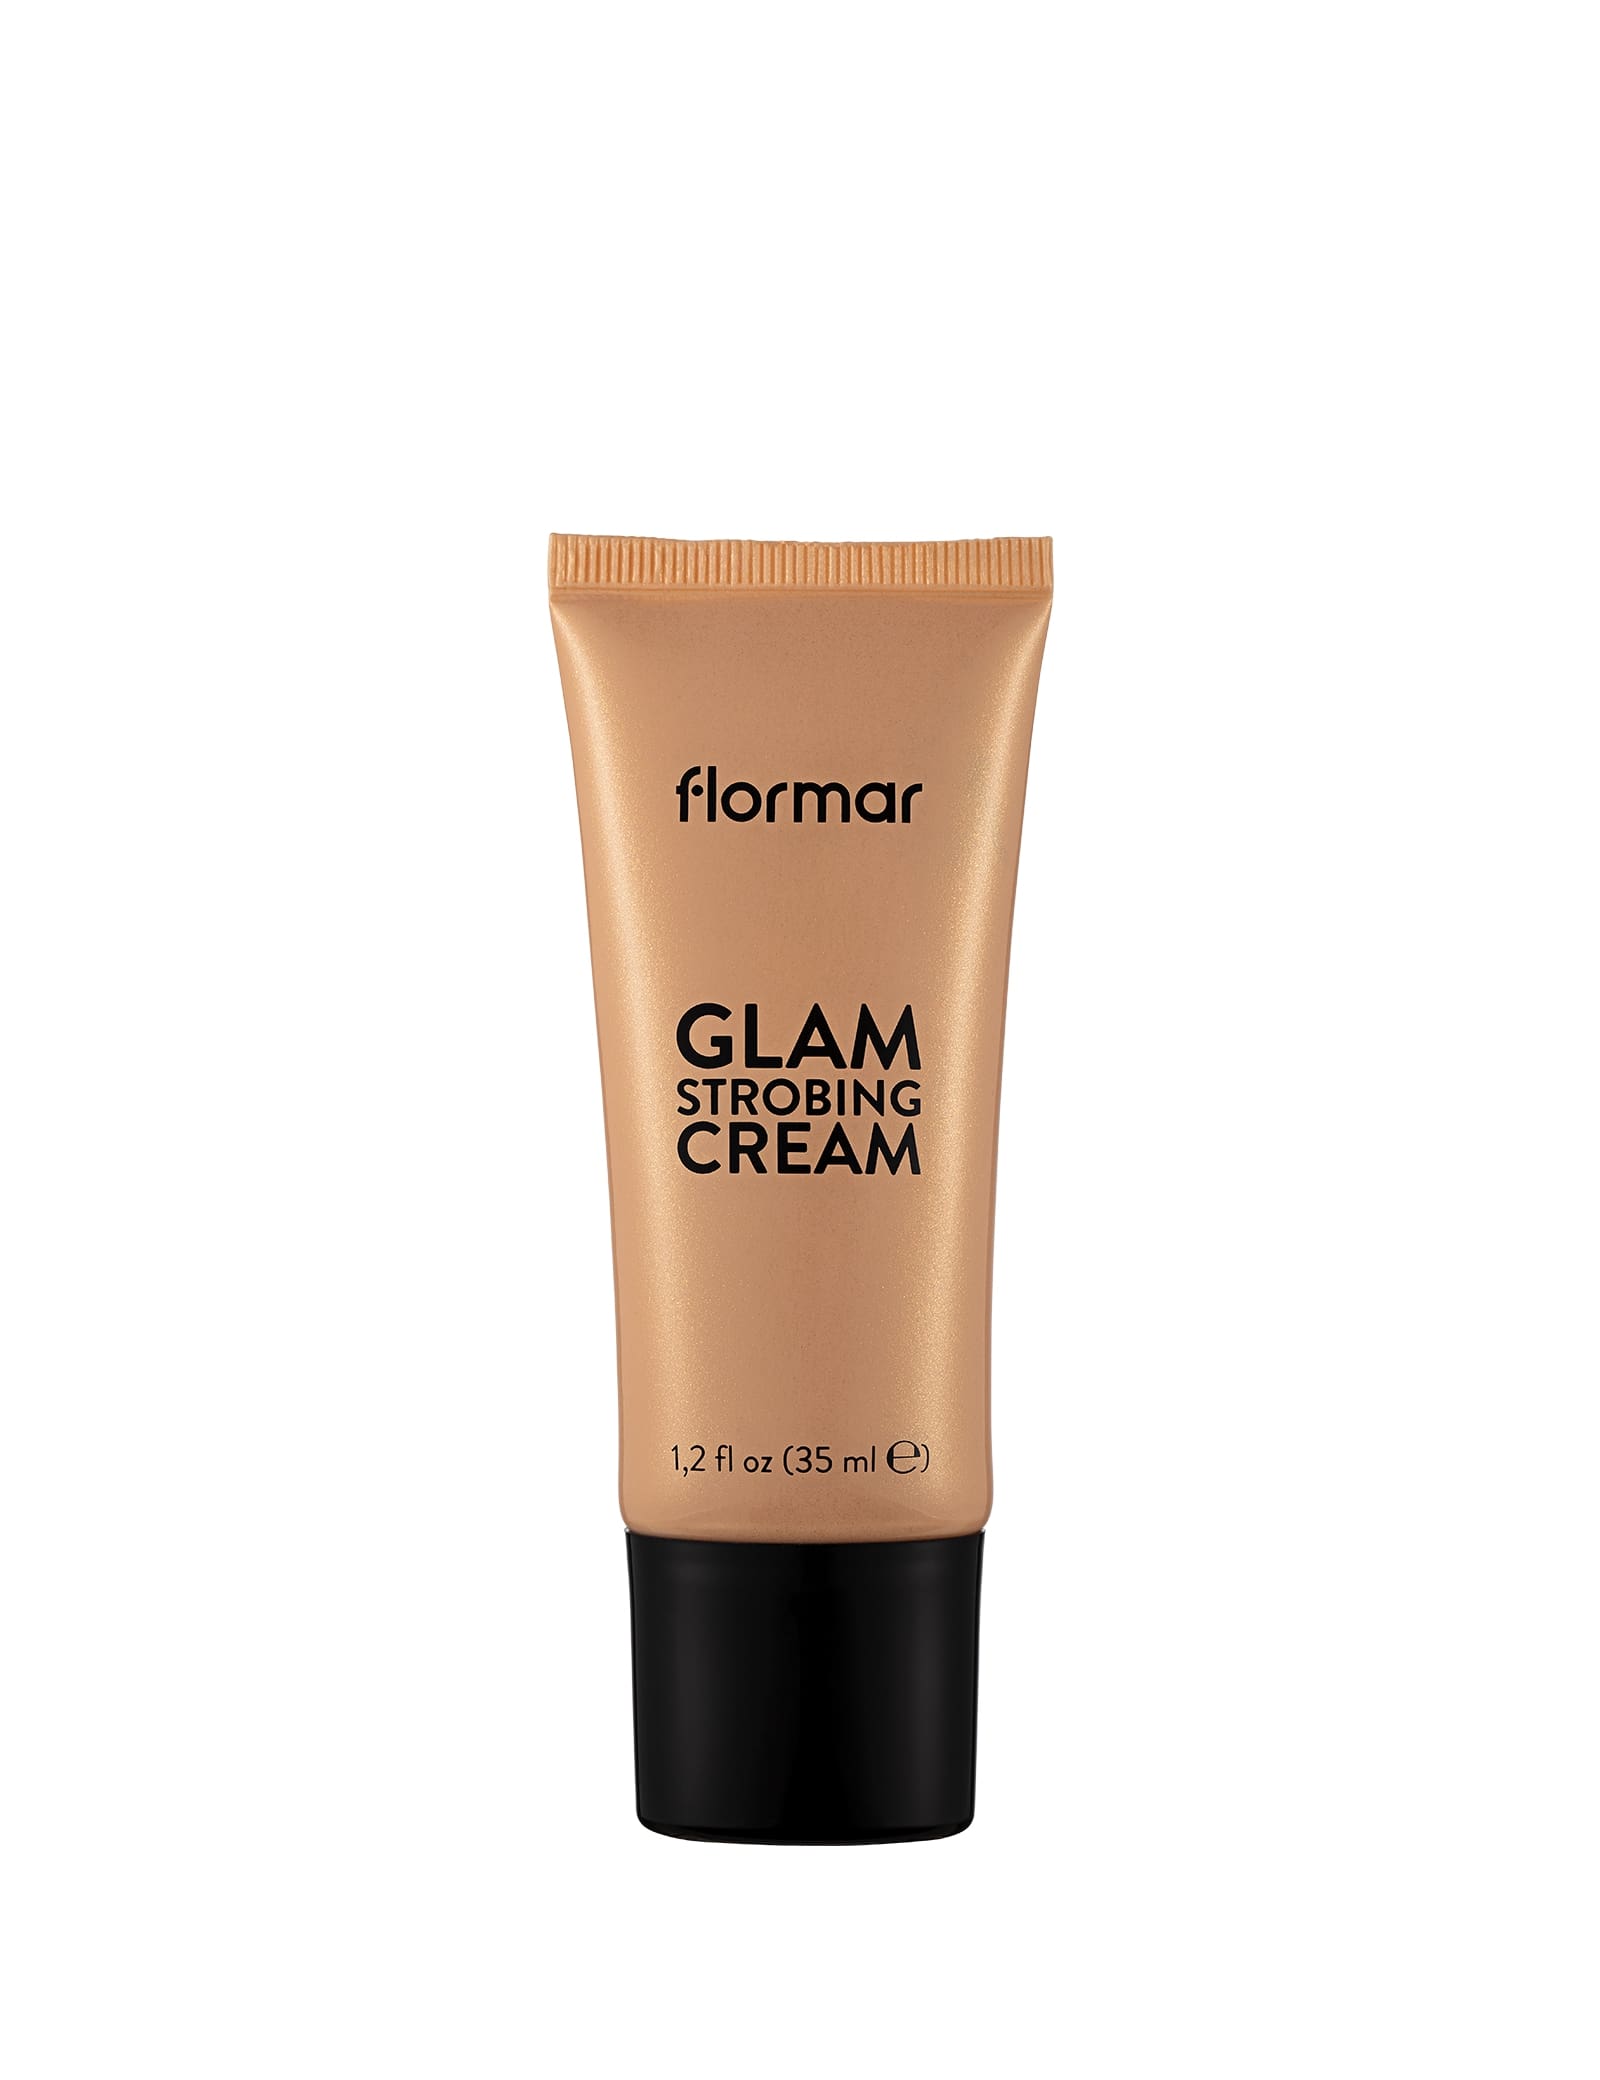 Flormar Glam Strobing Cream - 02